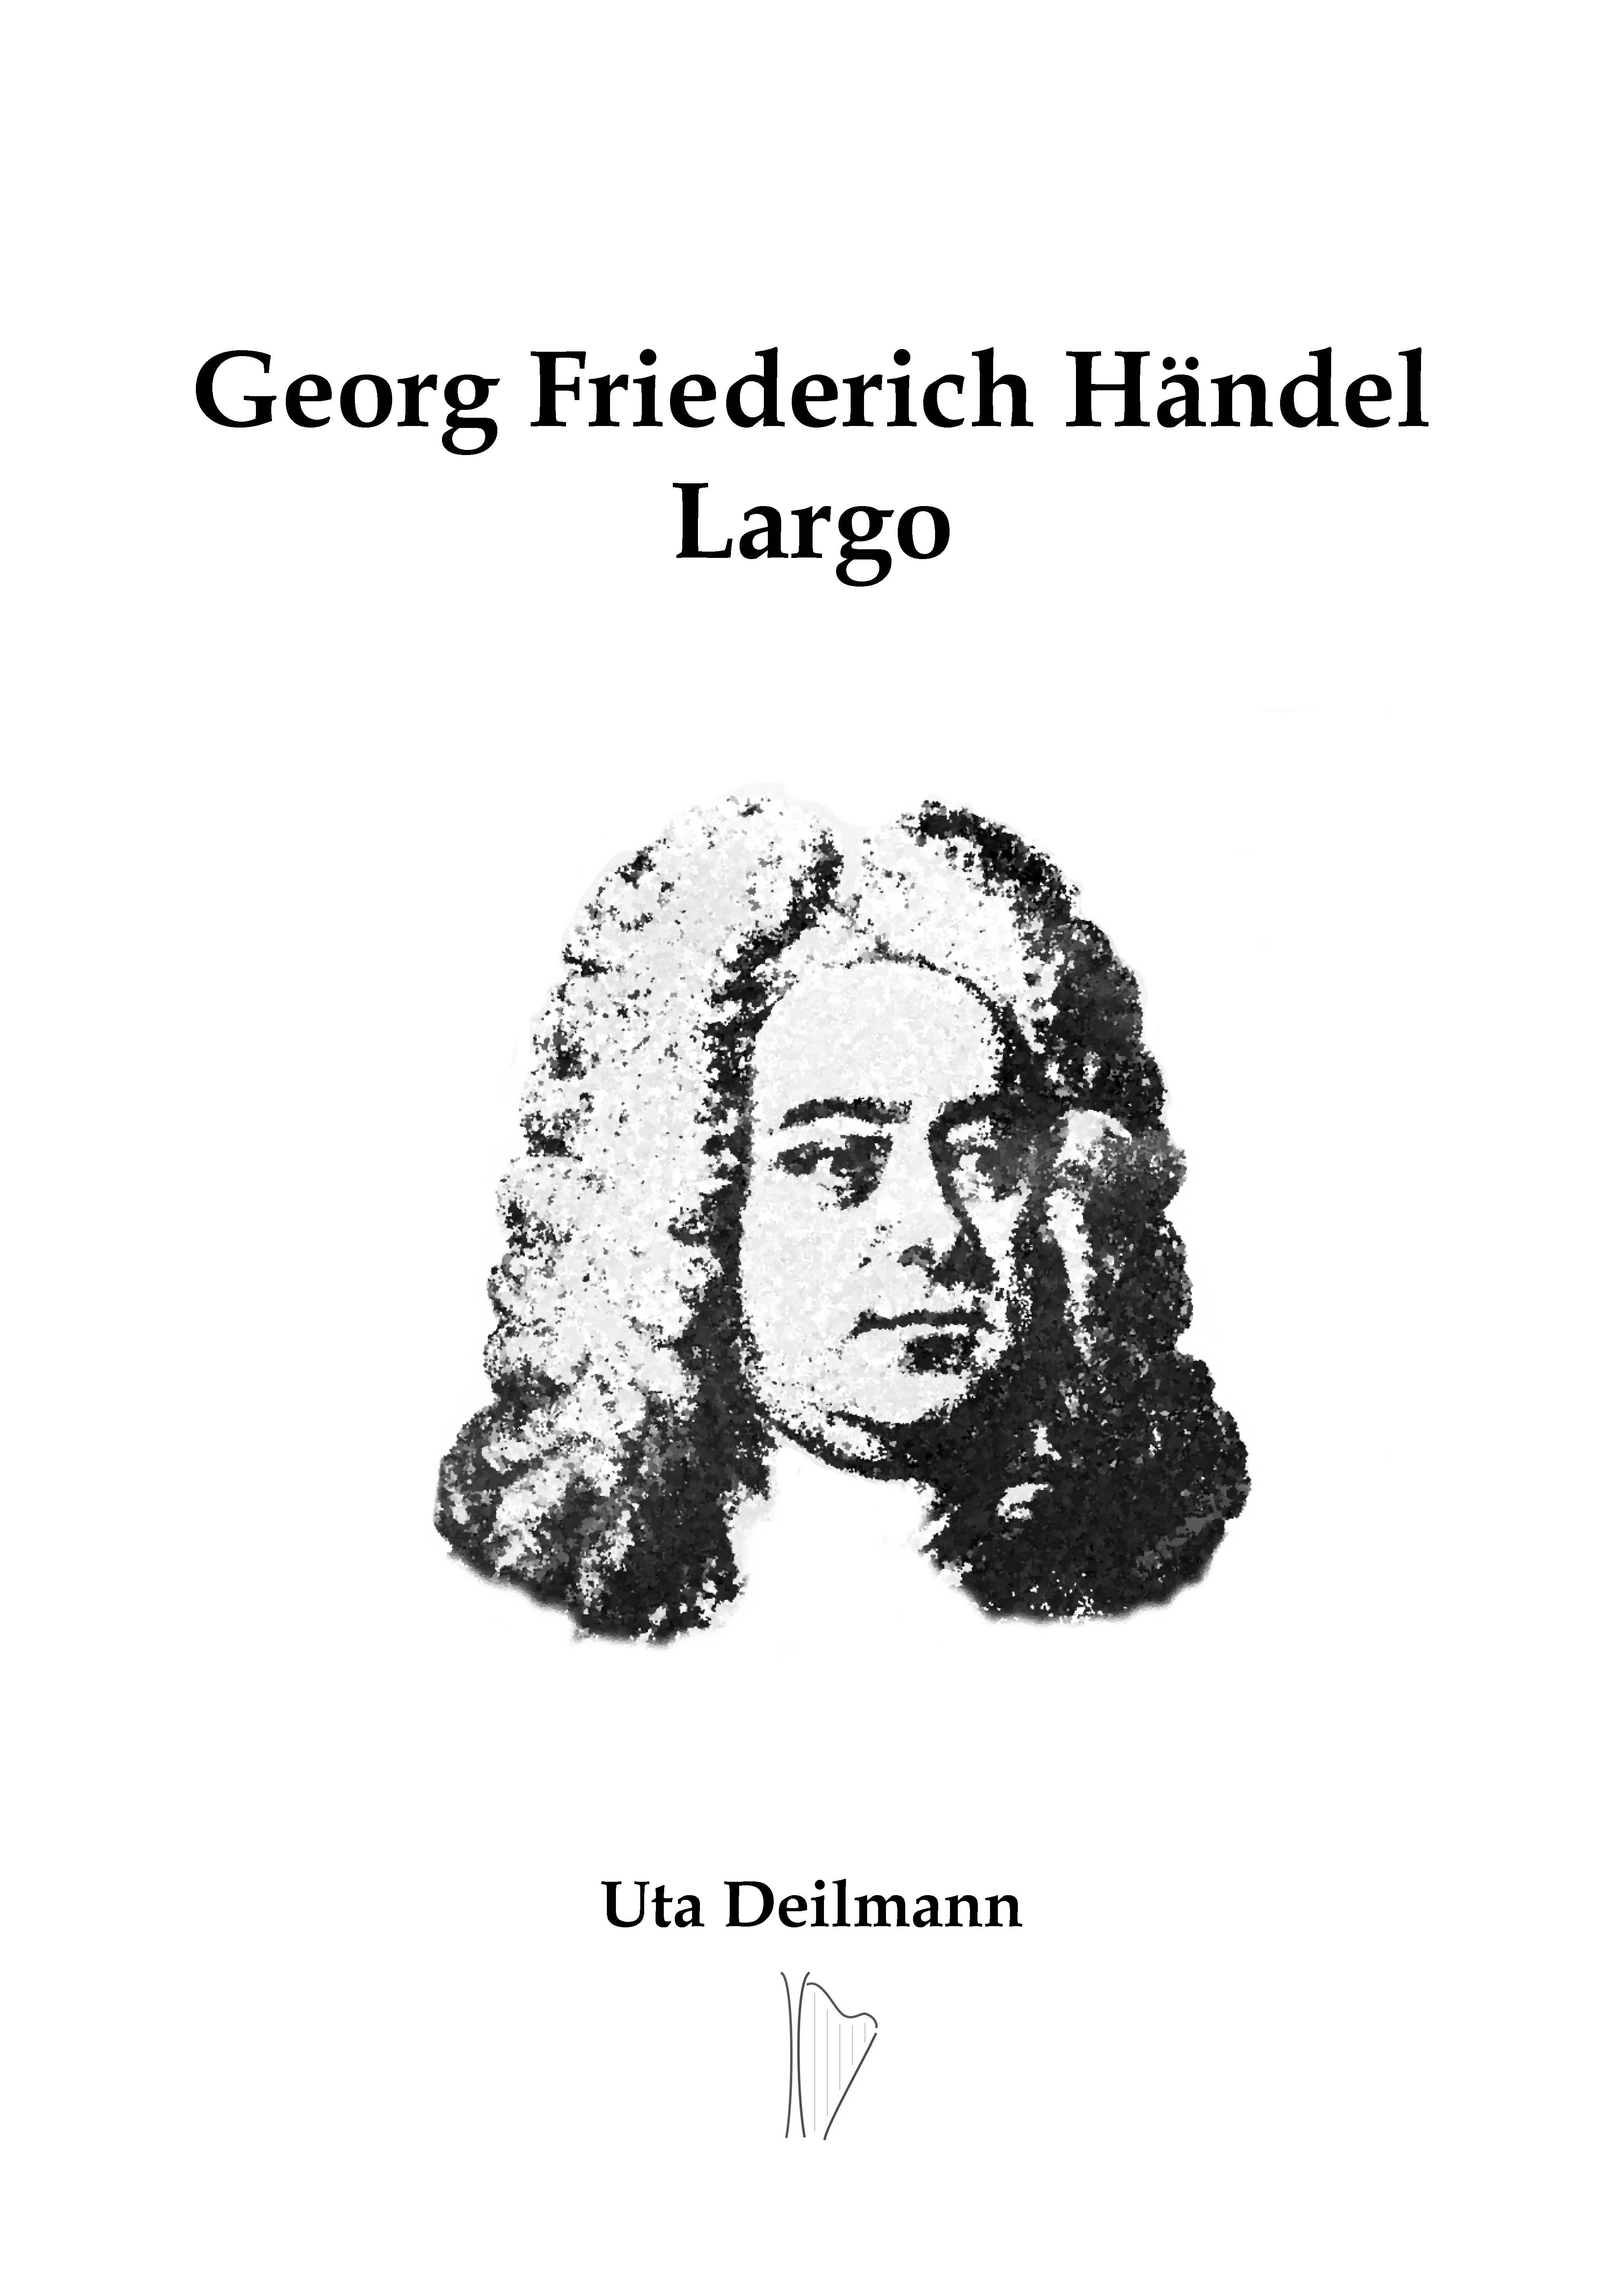 Händel Largo-homepage_Seite_1.jpg